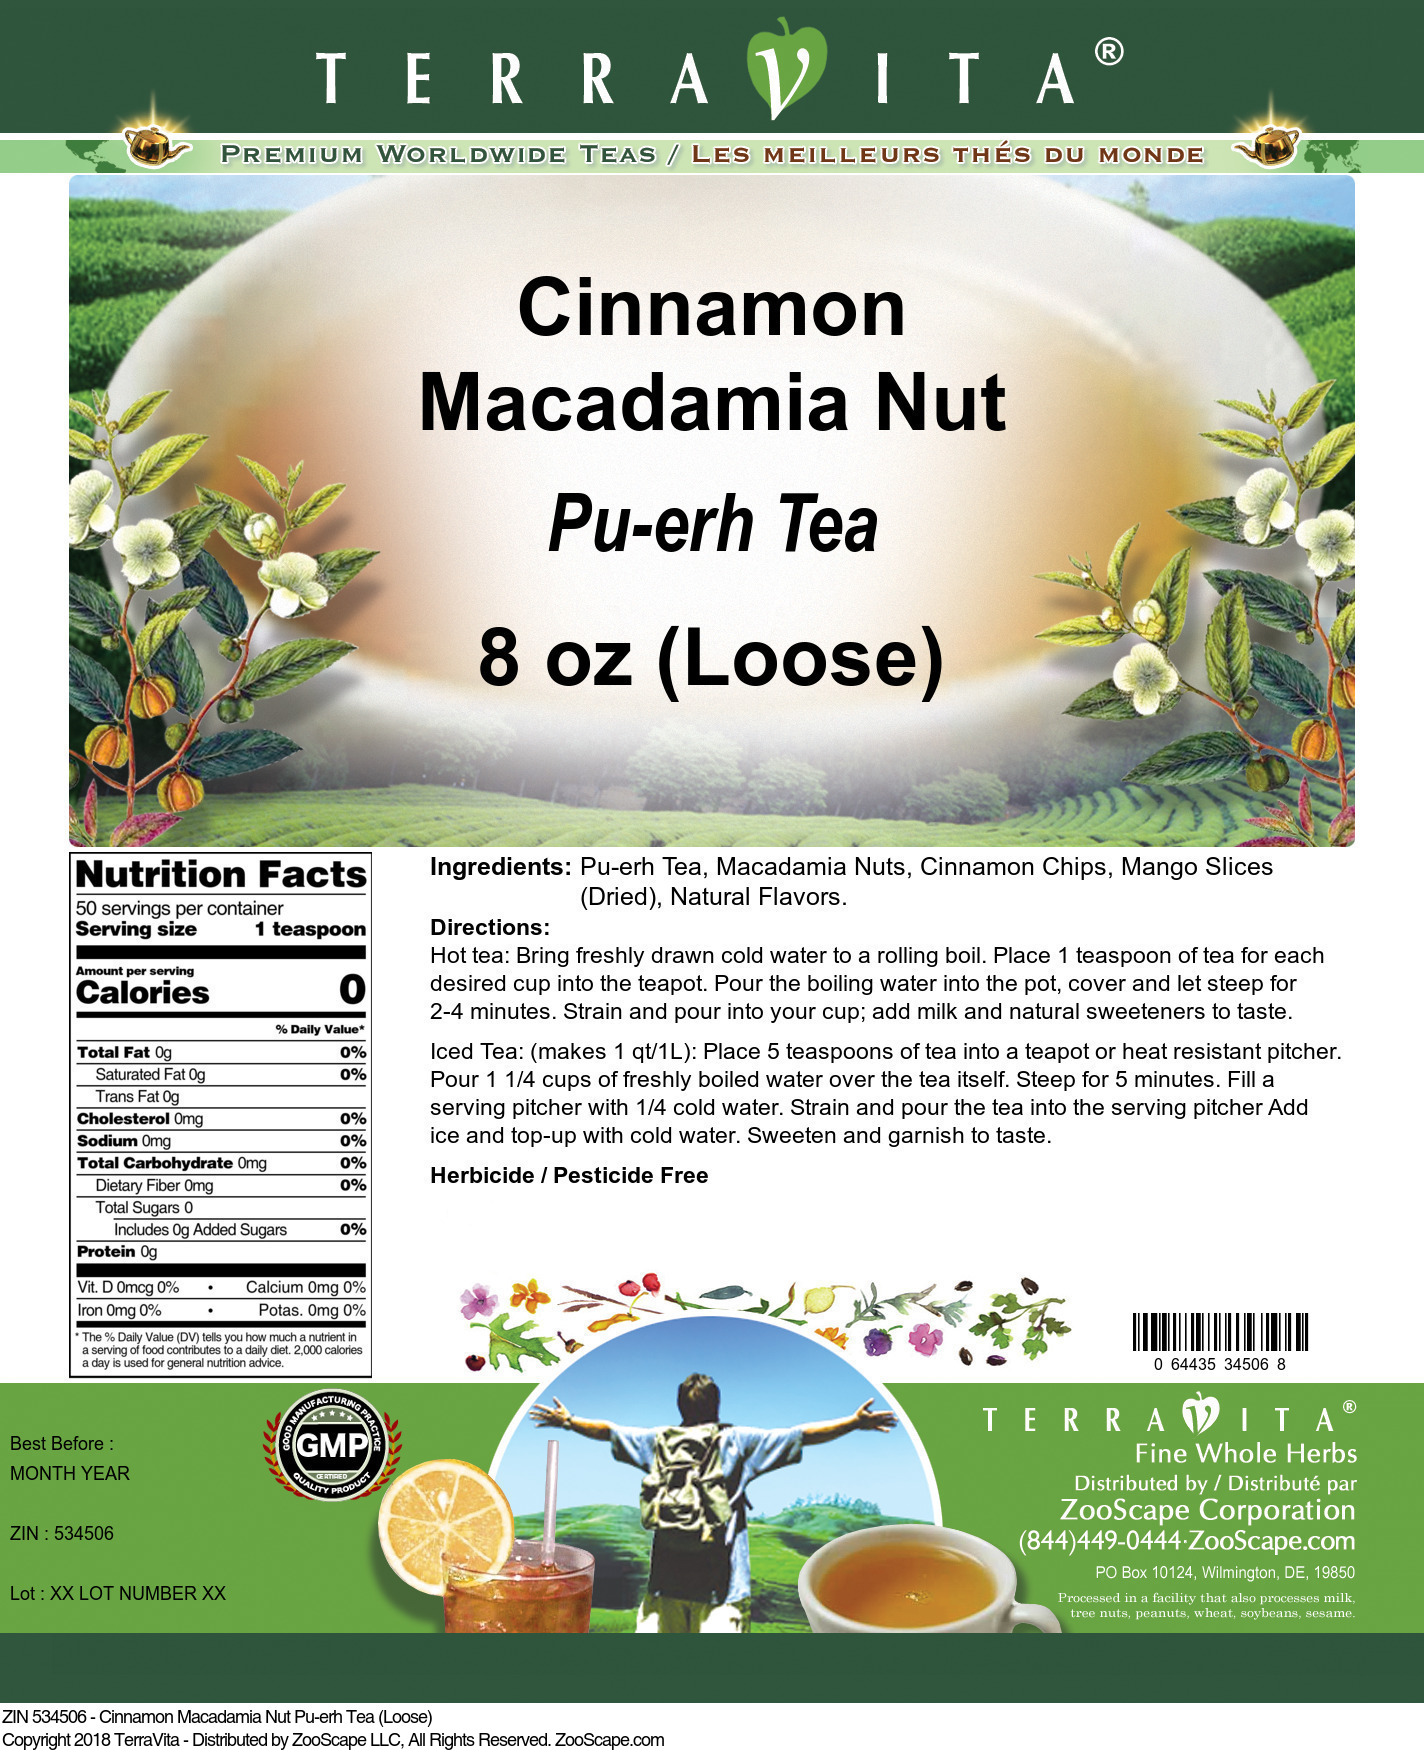 Cinnamon Macadamia Nut Pu-erh Tea (Loose) - Label